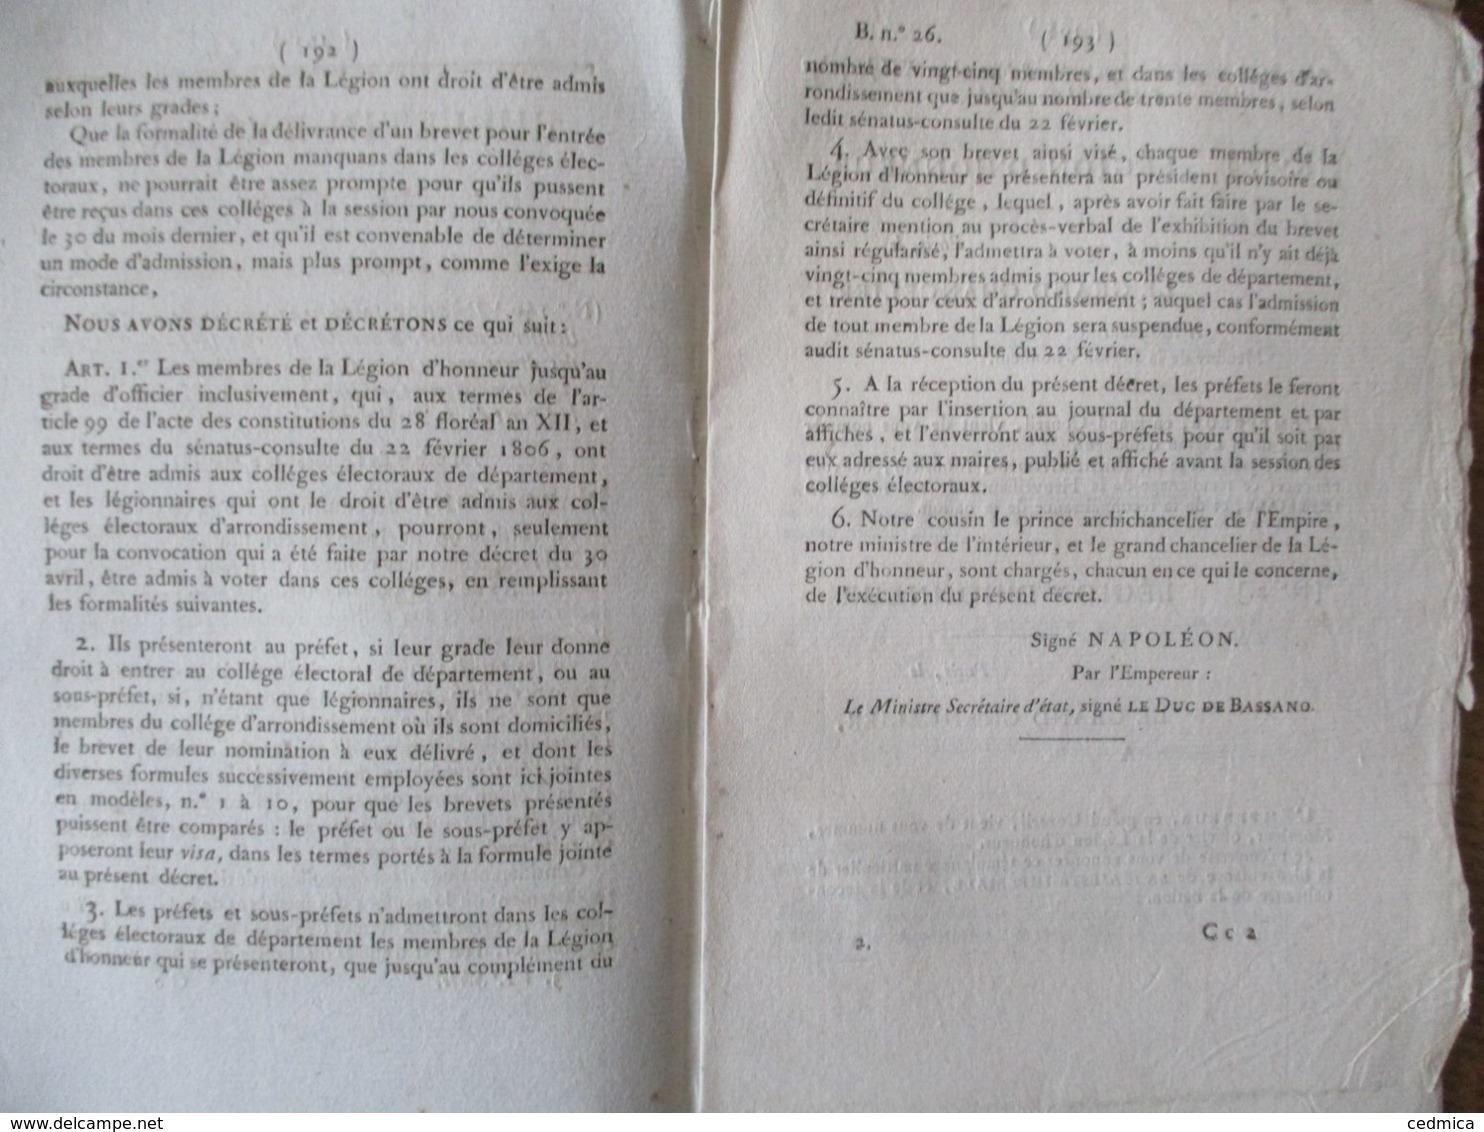 BULLETIN DES LOIS N°26 DU 3 MAI 1815 AU PALAIS DE L'ELYSEE NAPOLEON DECRET IMPERIAL MEMBRES DE LA LEGION D'HONNEUR ADMIS - Gesetze & Erlasse